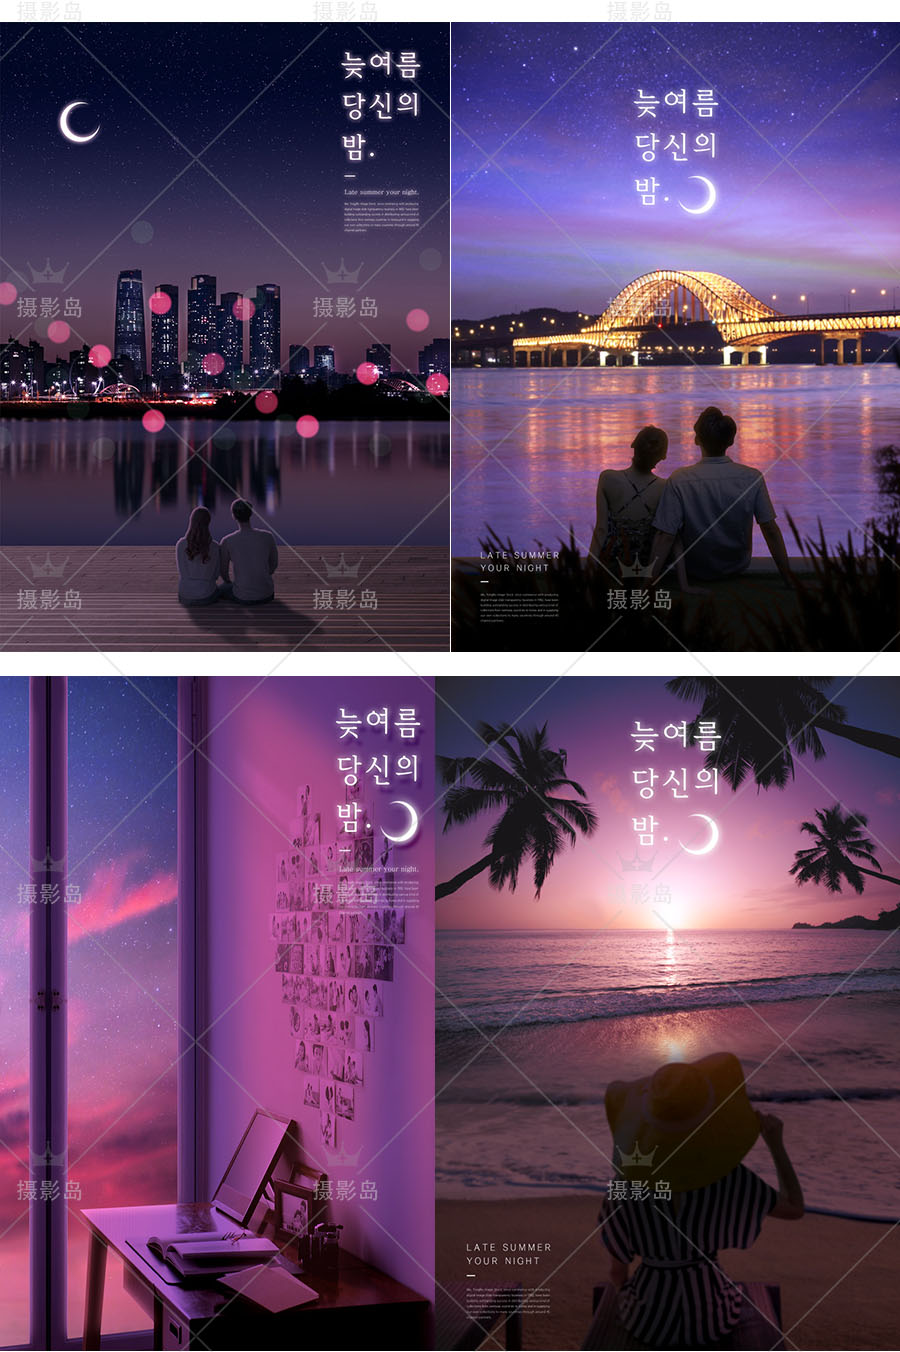 情侣约会浪漫星空PSD模版，情人节夜景广告海报素材